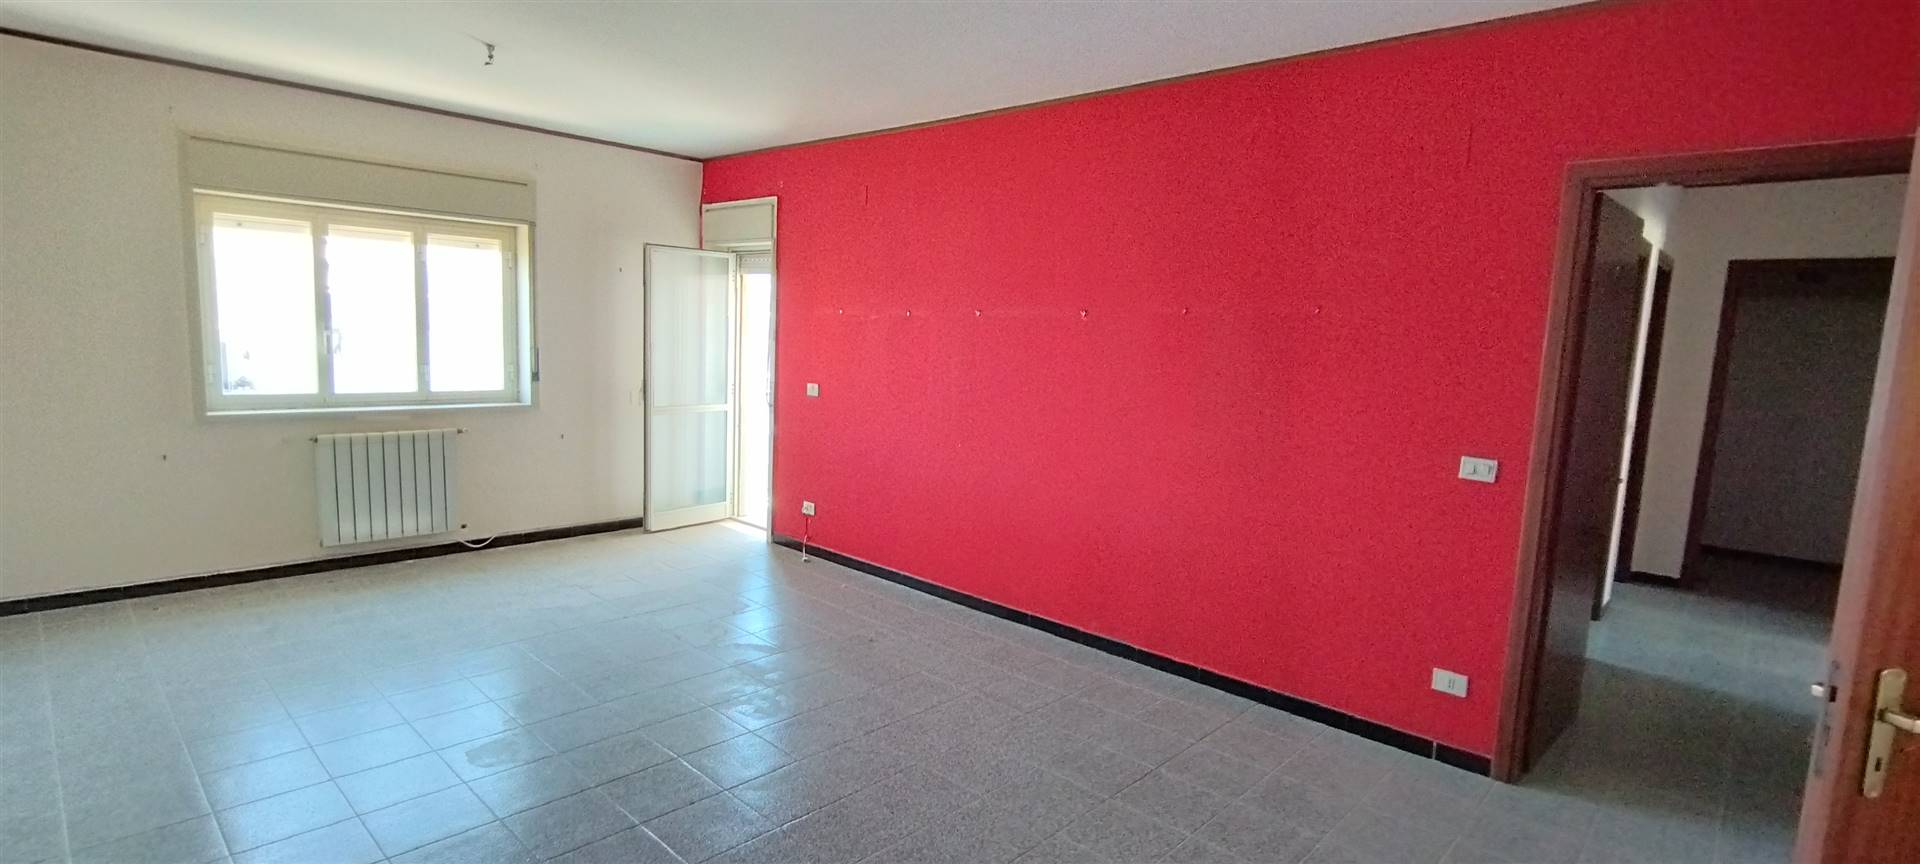 Appartamento in vendita a Siracusa, 4 locali, zona Località: MAZZARONA, prezzo € 130.000 | PortaleAgenzieImmobiliari.it